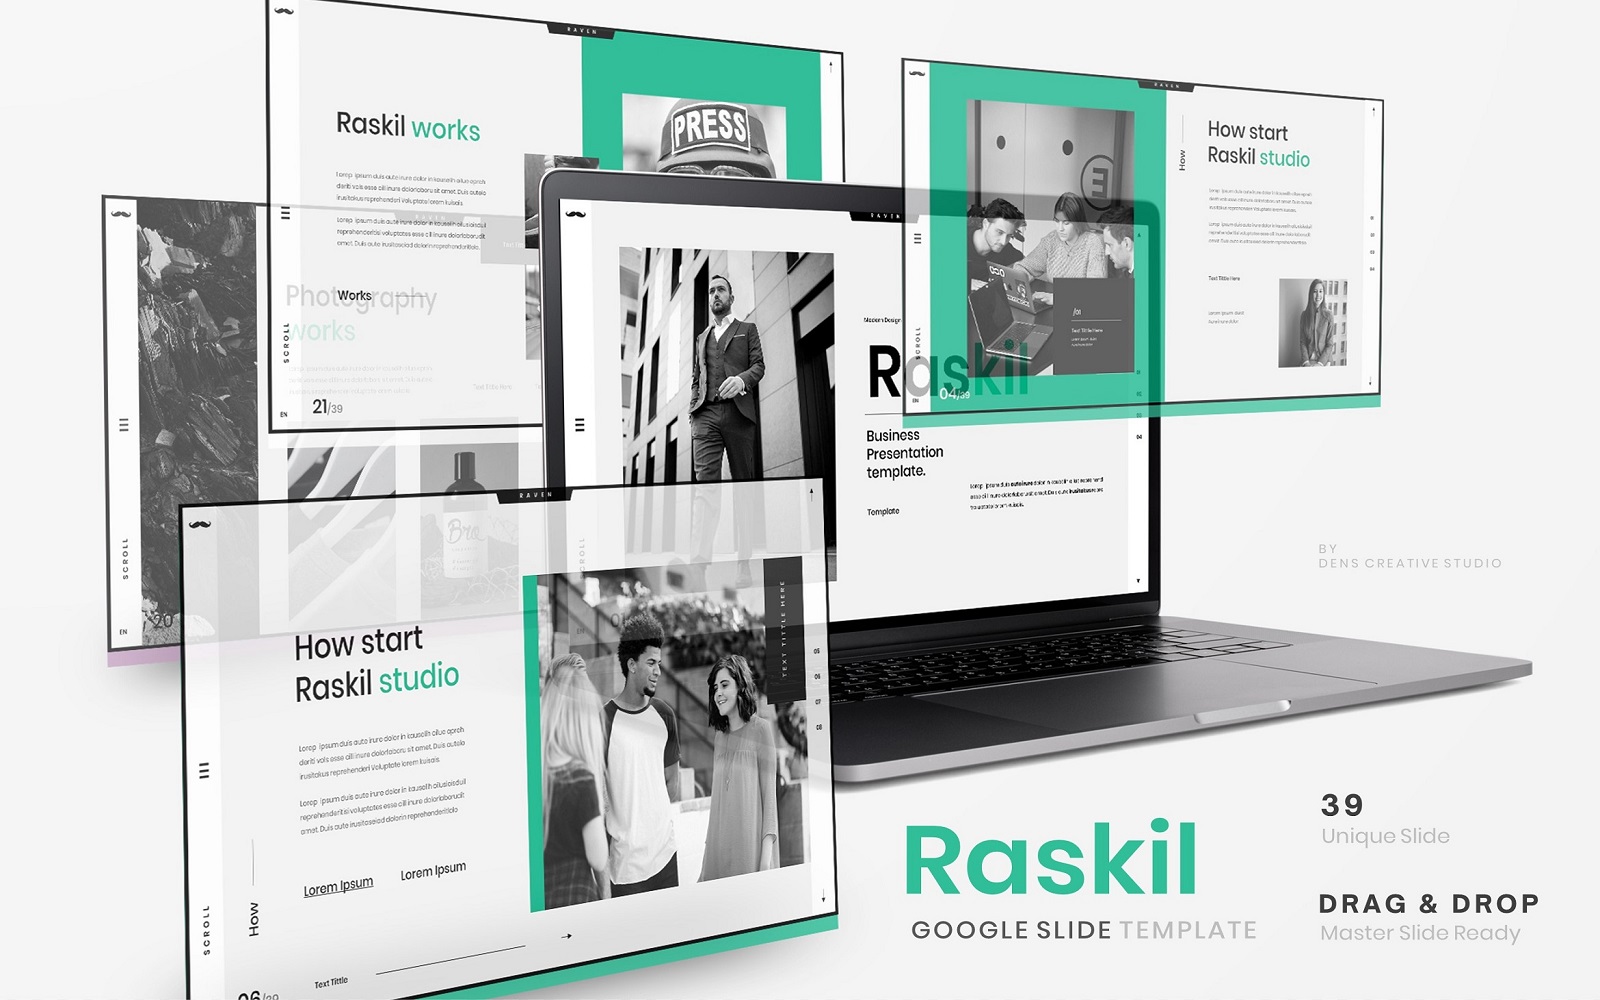 Raskil - Business Google Slide Template